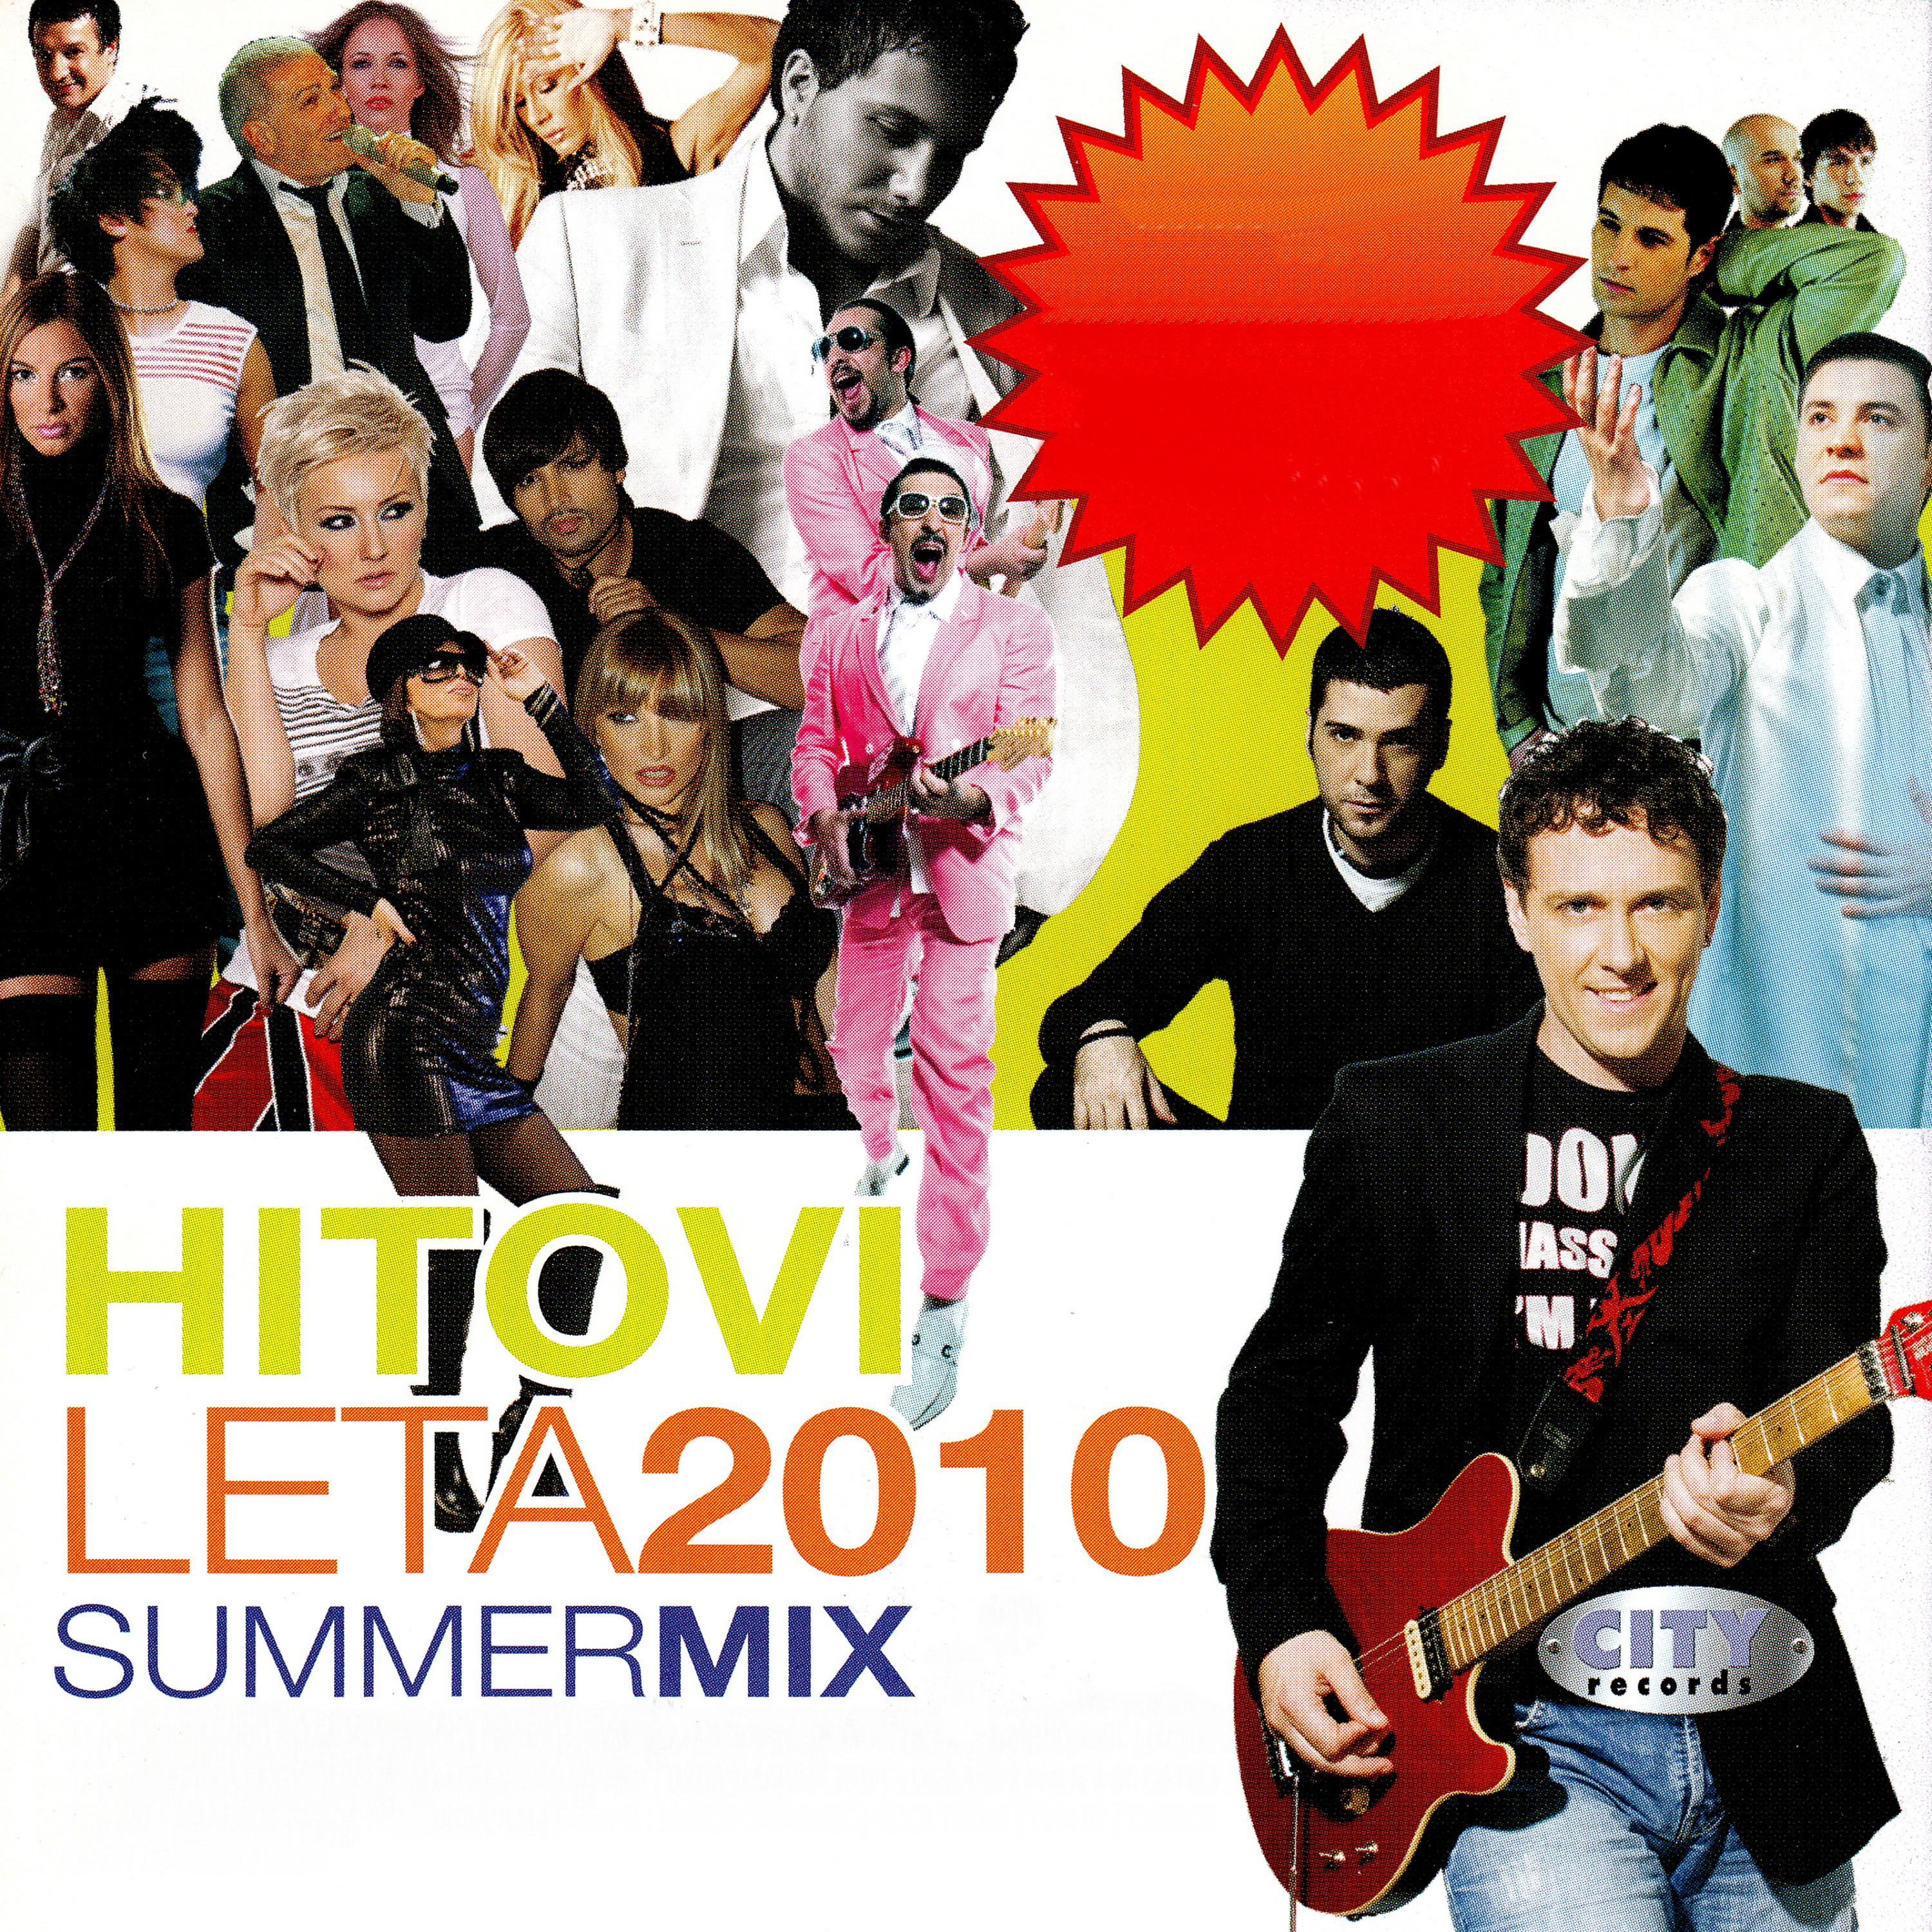 Hitovi leta 2010 Summer mix